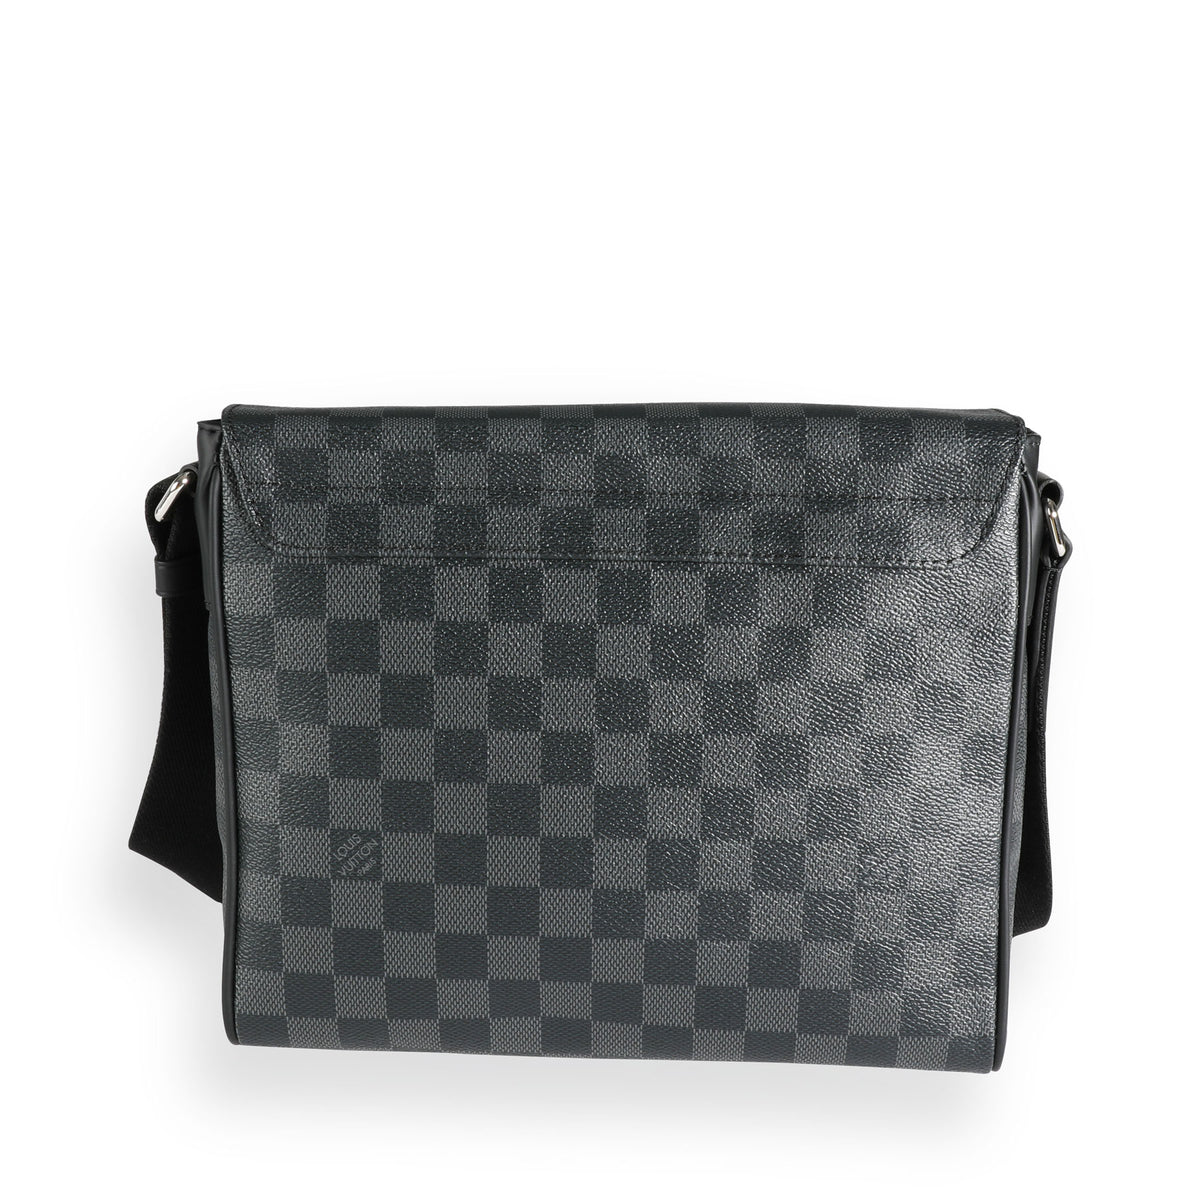 Pre-Owned Louis Vuitton District PM Damier Graphite Shoulder Bag